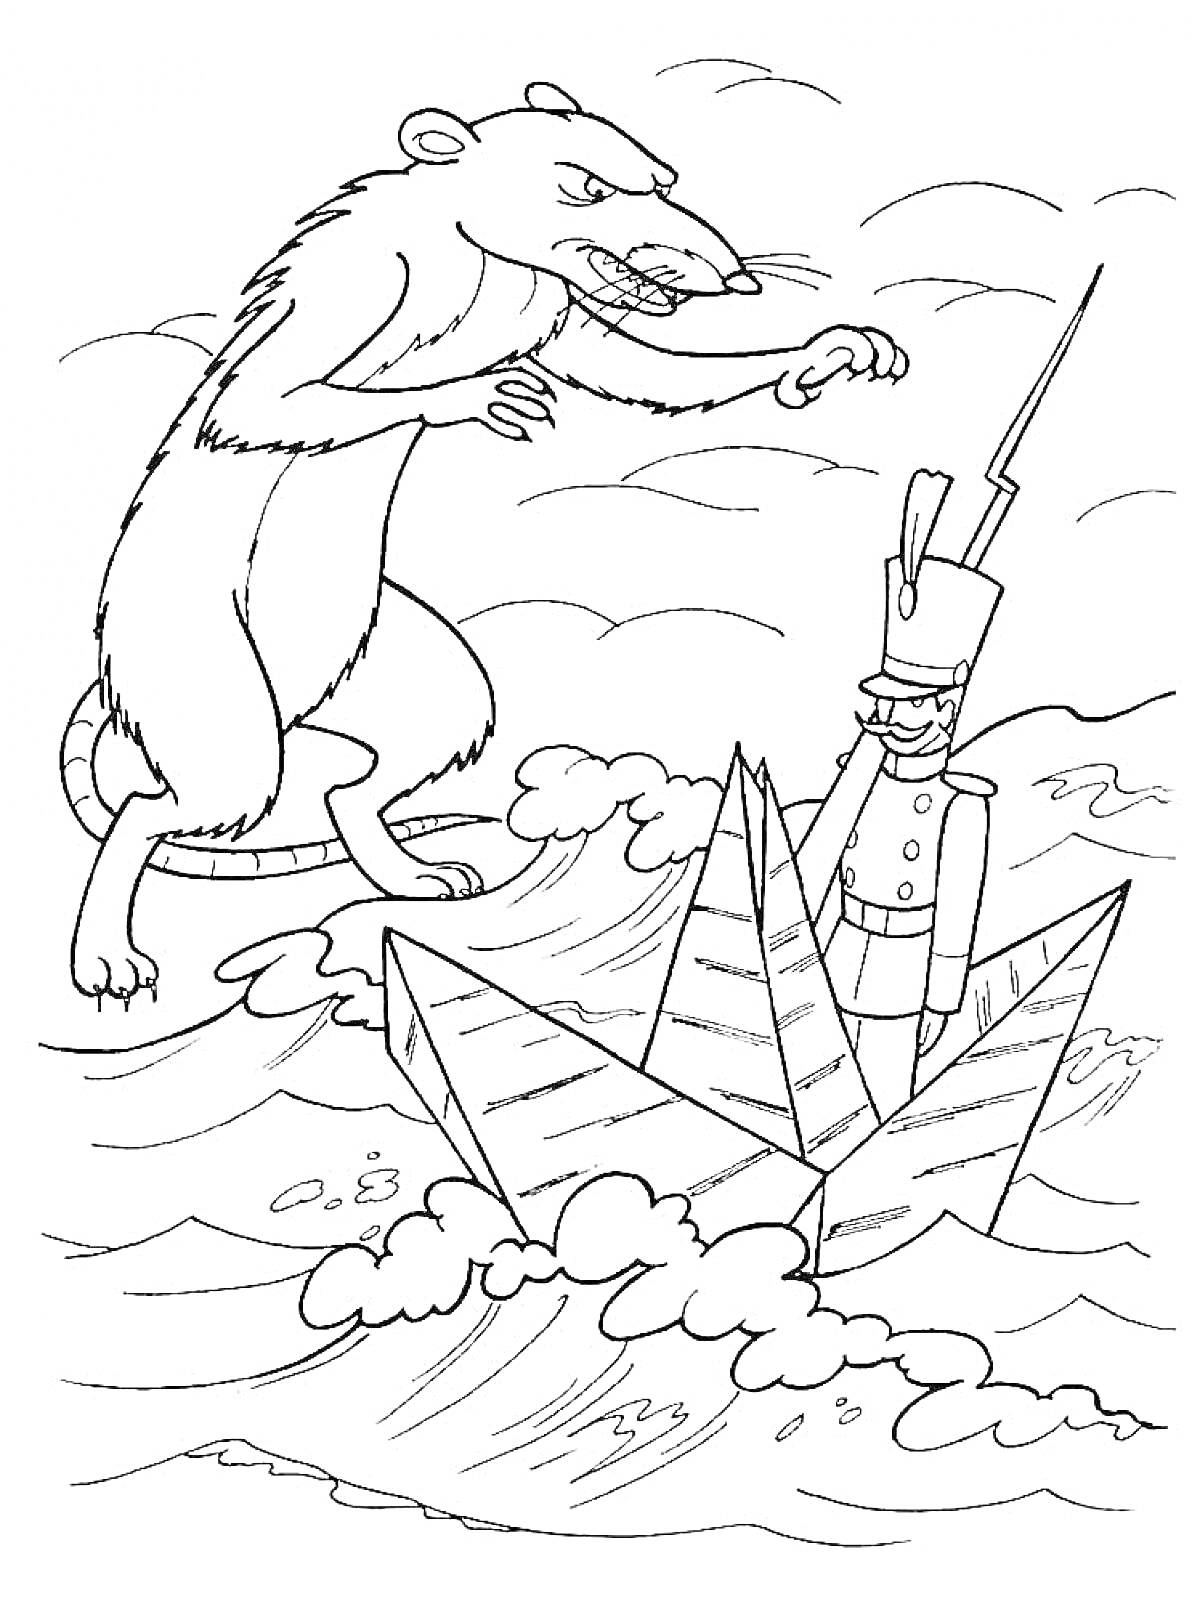 Раскраска Крыса и оловянный солдатик в бумажном кораблике на волнах